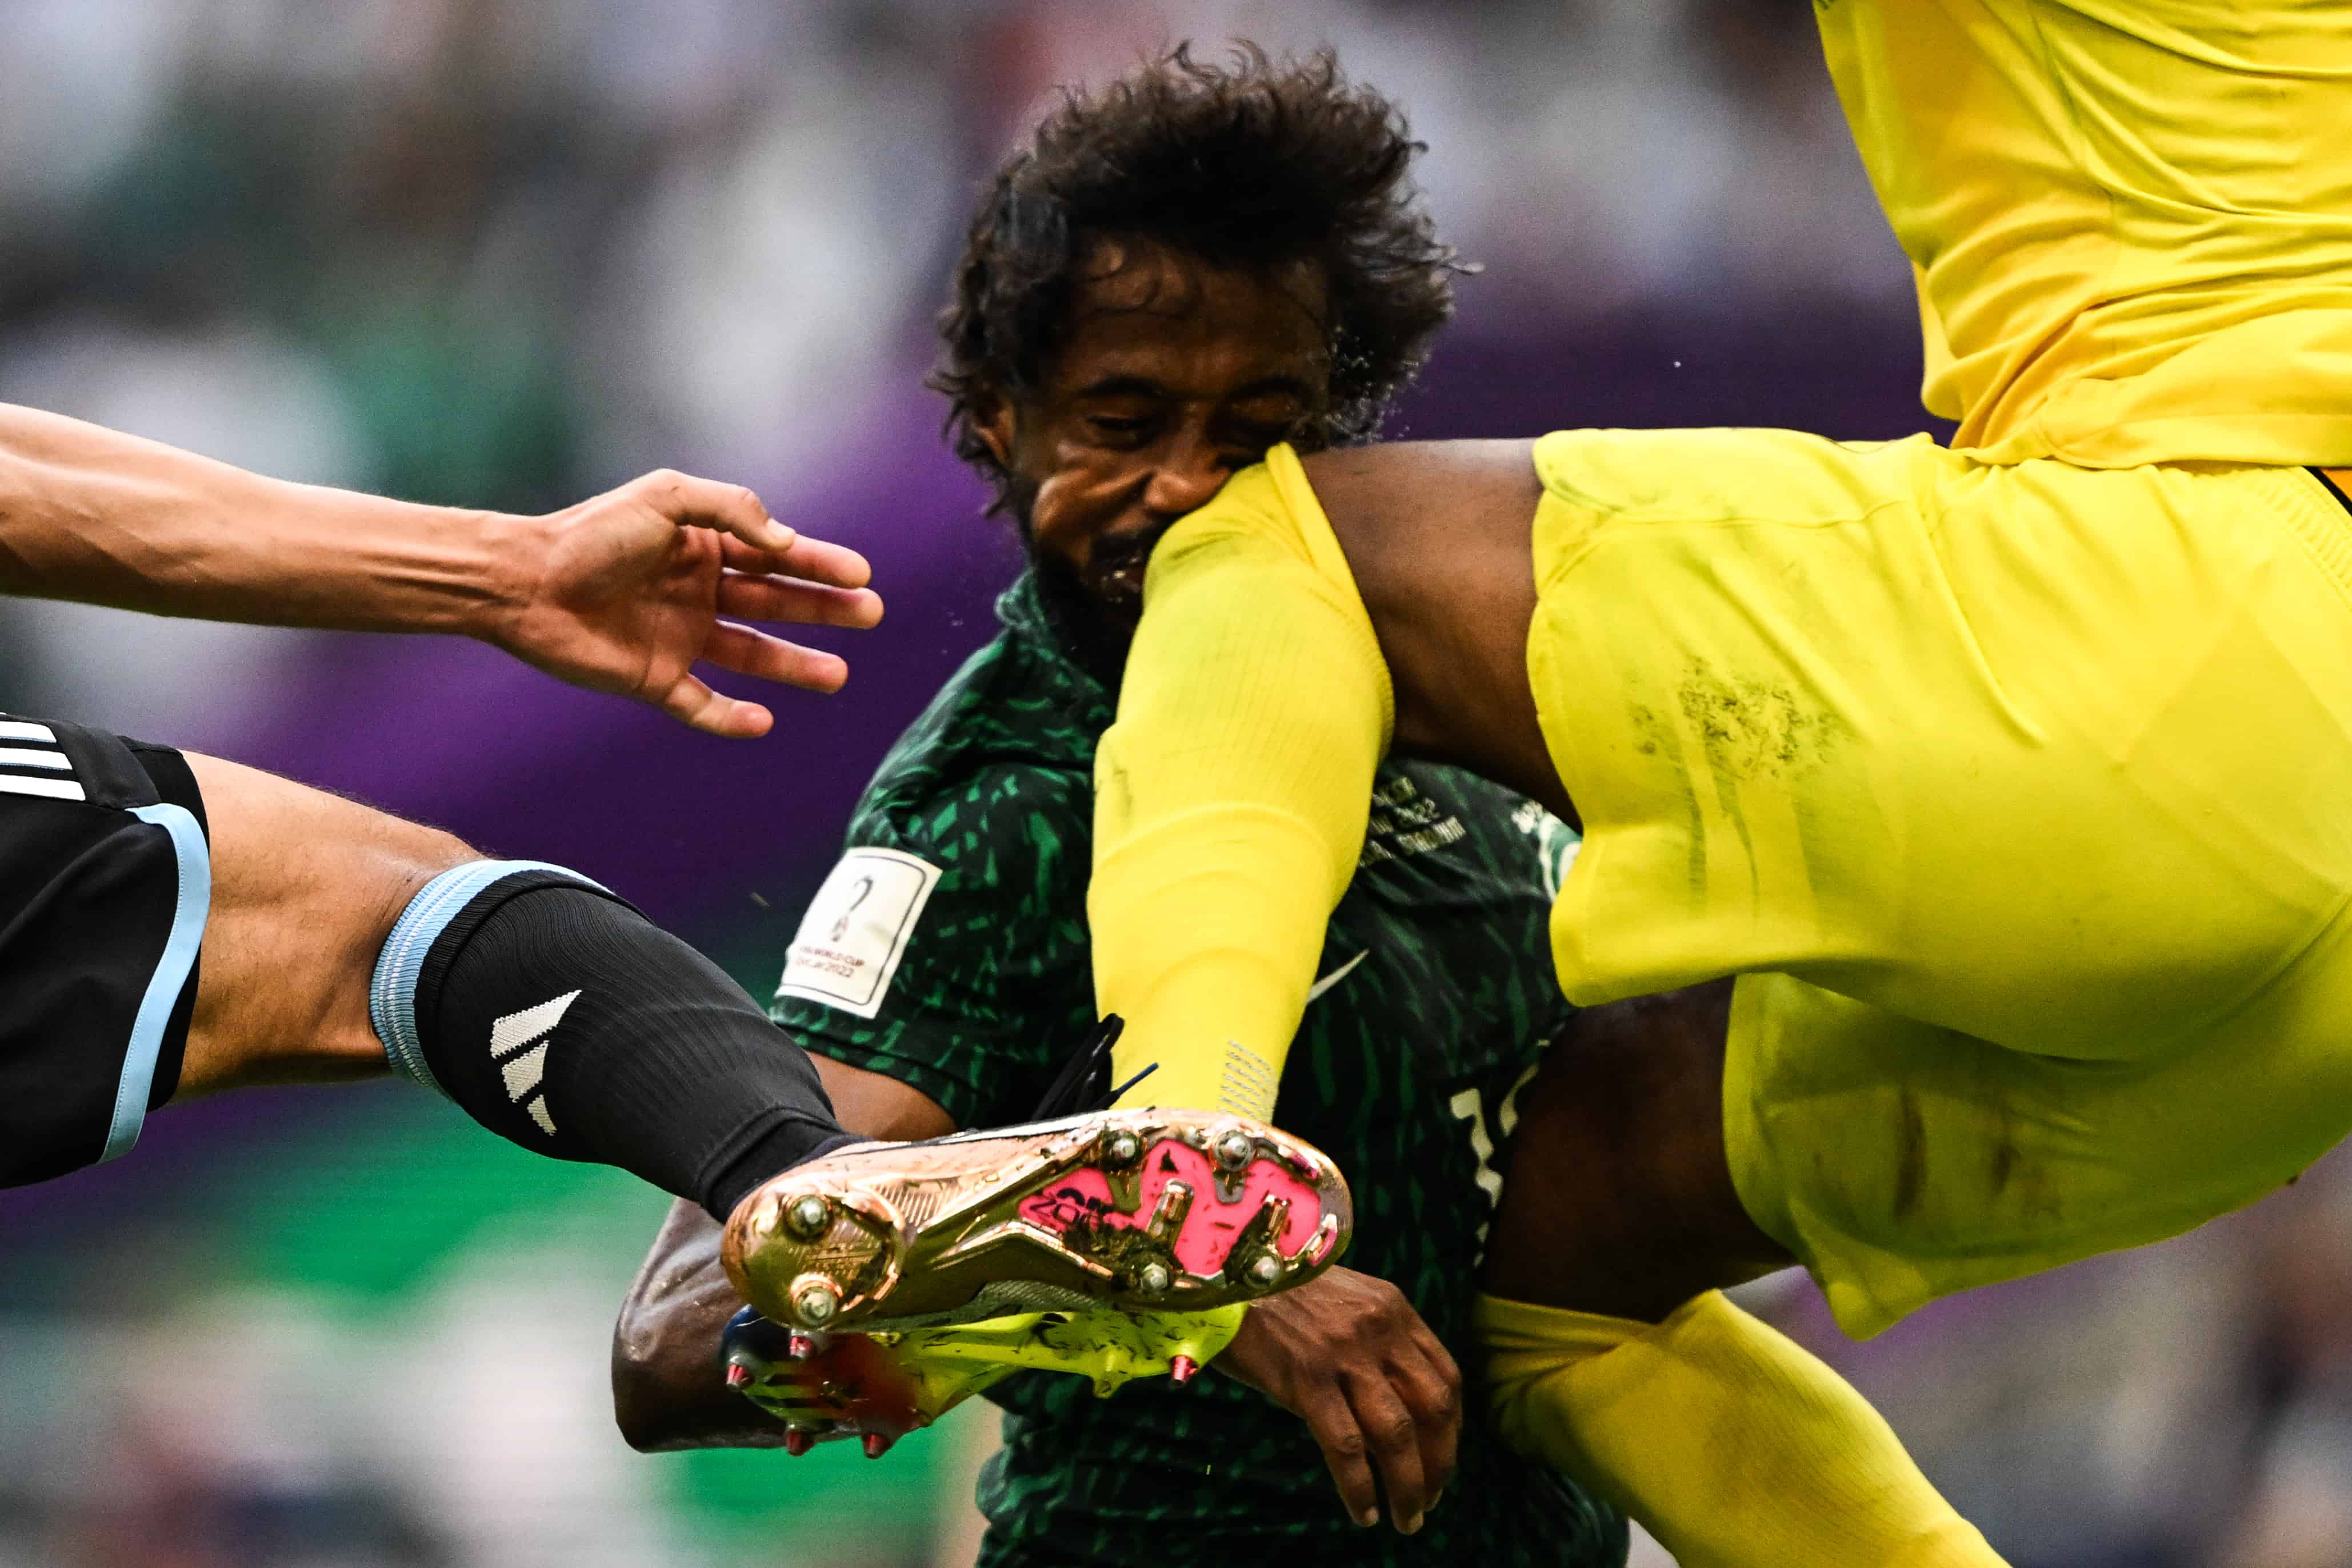 El portero de Arabia Saudita # 21 Mohammed Al-Owais (R) golpea al defensor de Arabia Saudita # 13 Yasser Al-Shahrani (C) en la cabeza durante el partido de fútbol del Grupo C de la Copa Mundial de Qatar 2022 entre Argentina y Arabia Saudita en el Estadio Lusail en Lusail, al norte de Doha el 22 de noviembre de 2022.